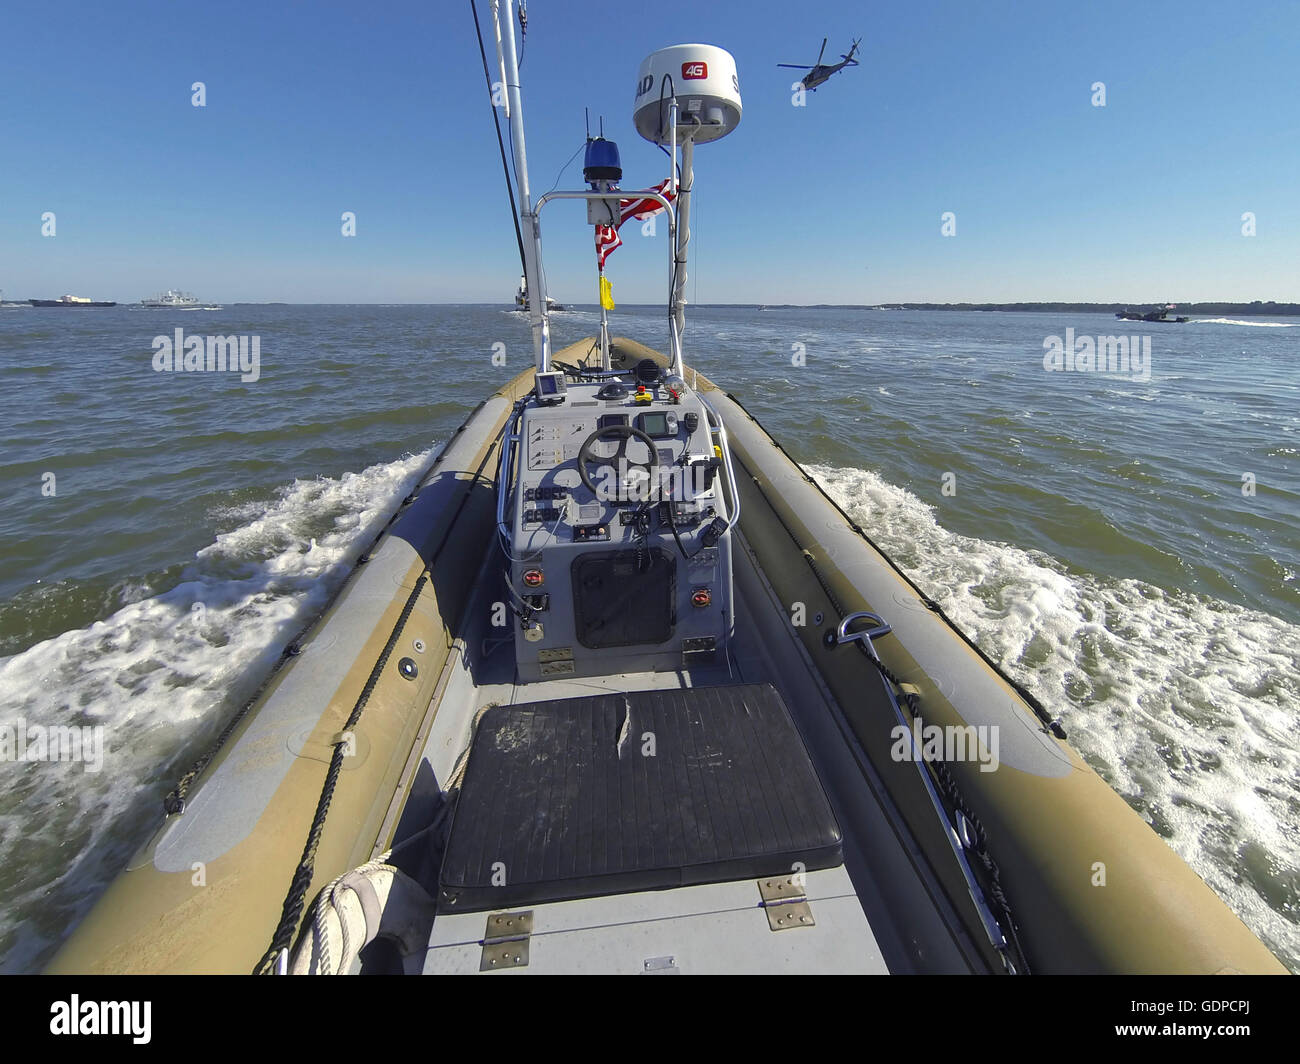 14 août 2014 - un drone de sept mètres à coque rigide fonctionne de manière autonome sur la James River à Newport News, V Banque D'Images